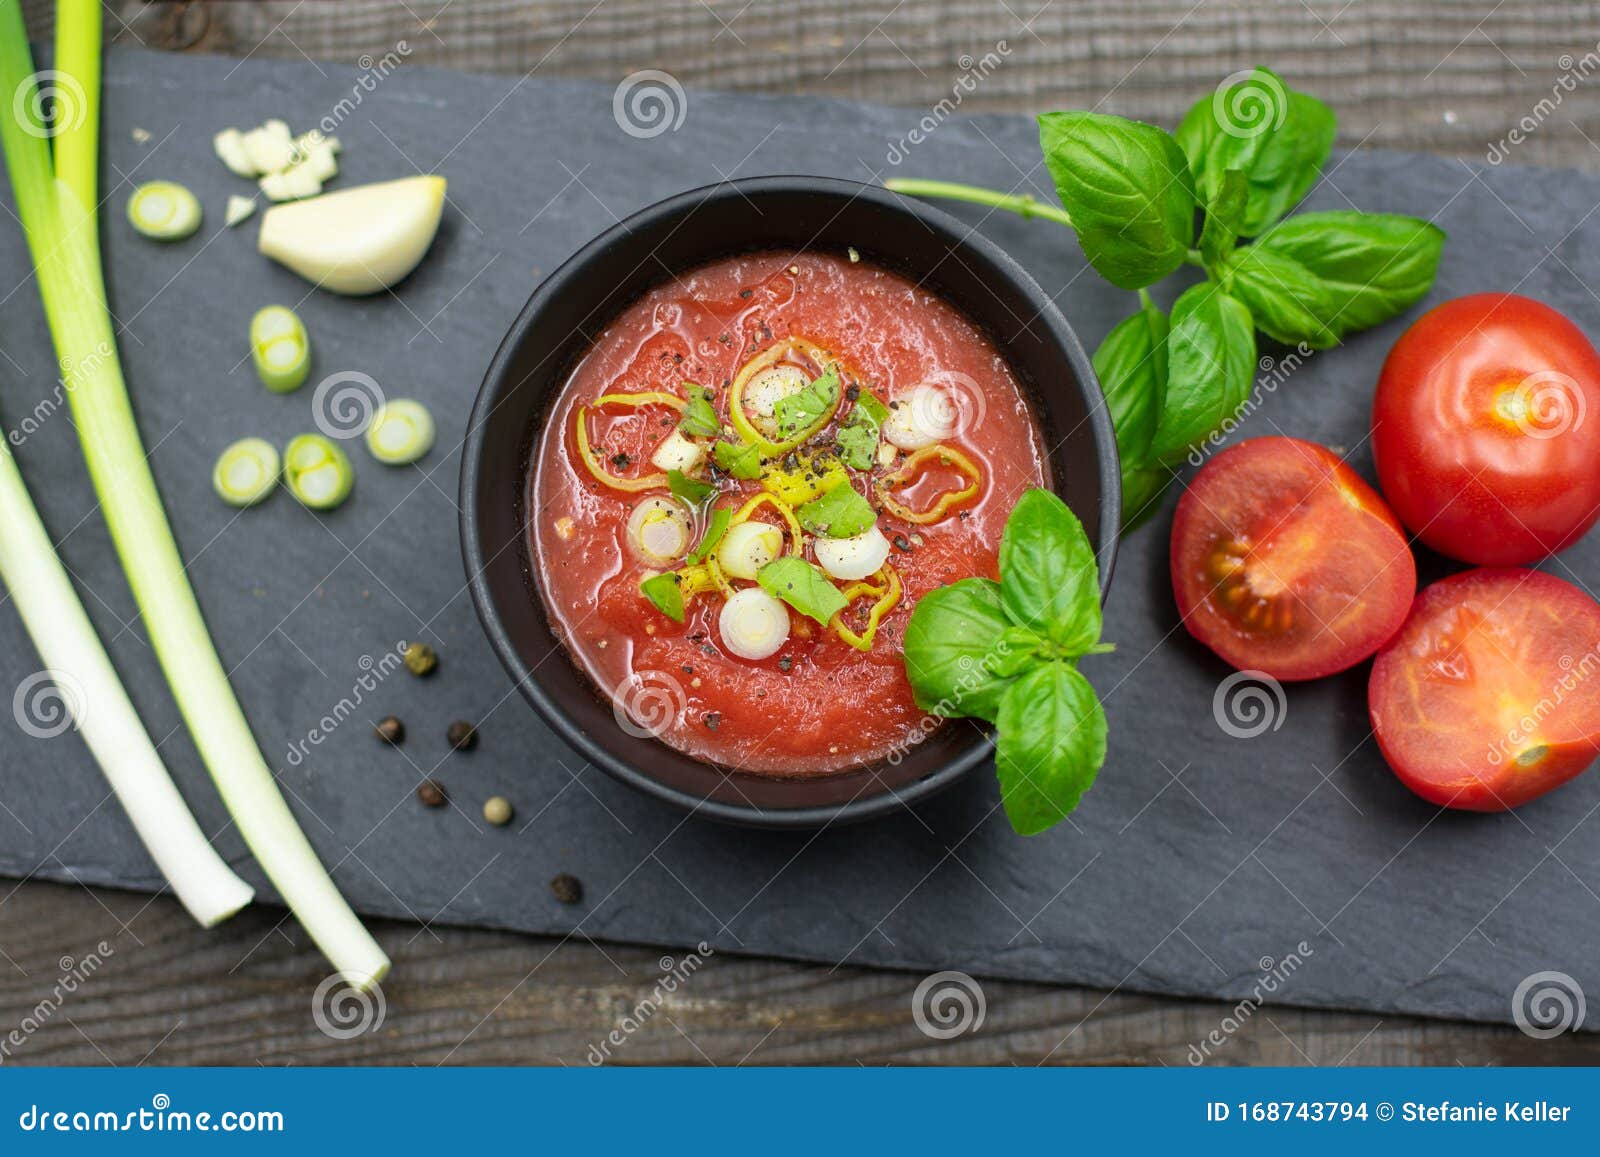 地中海海鲜炖煮的食物汤 库存照片. 图片 包括有 意大利, 鲜美, 海鲜, 烹调, 食物, 意大利语, 红色 - 53929874